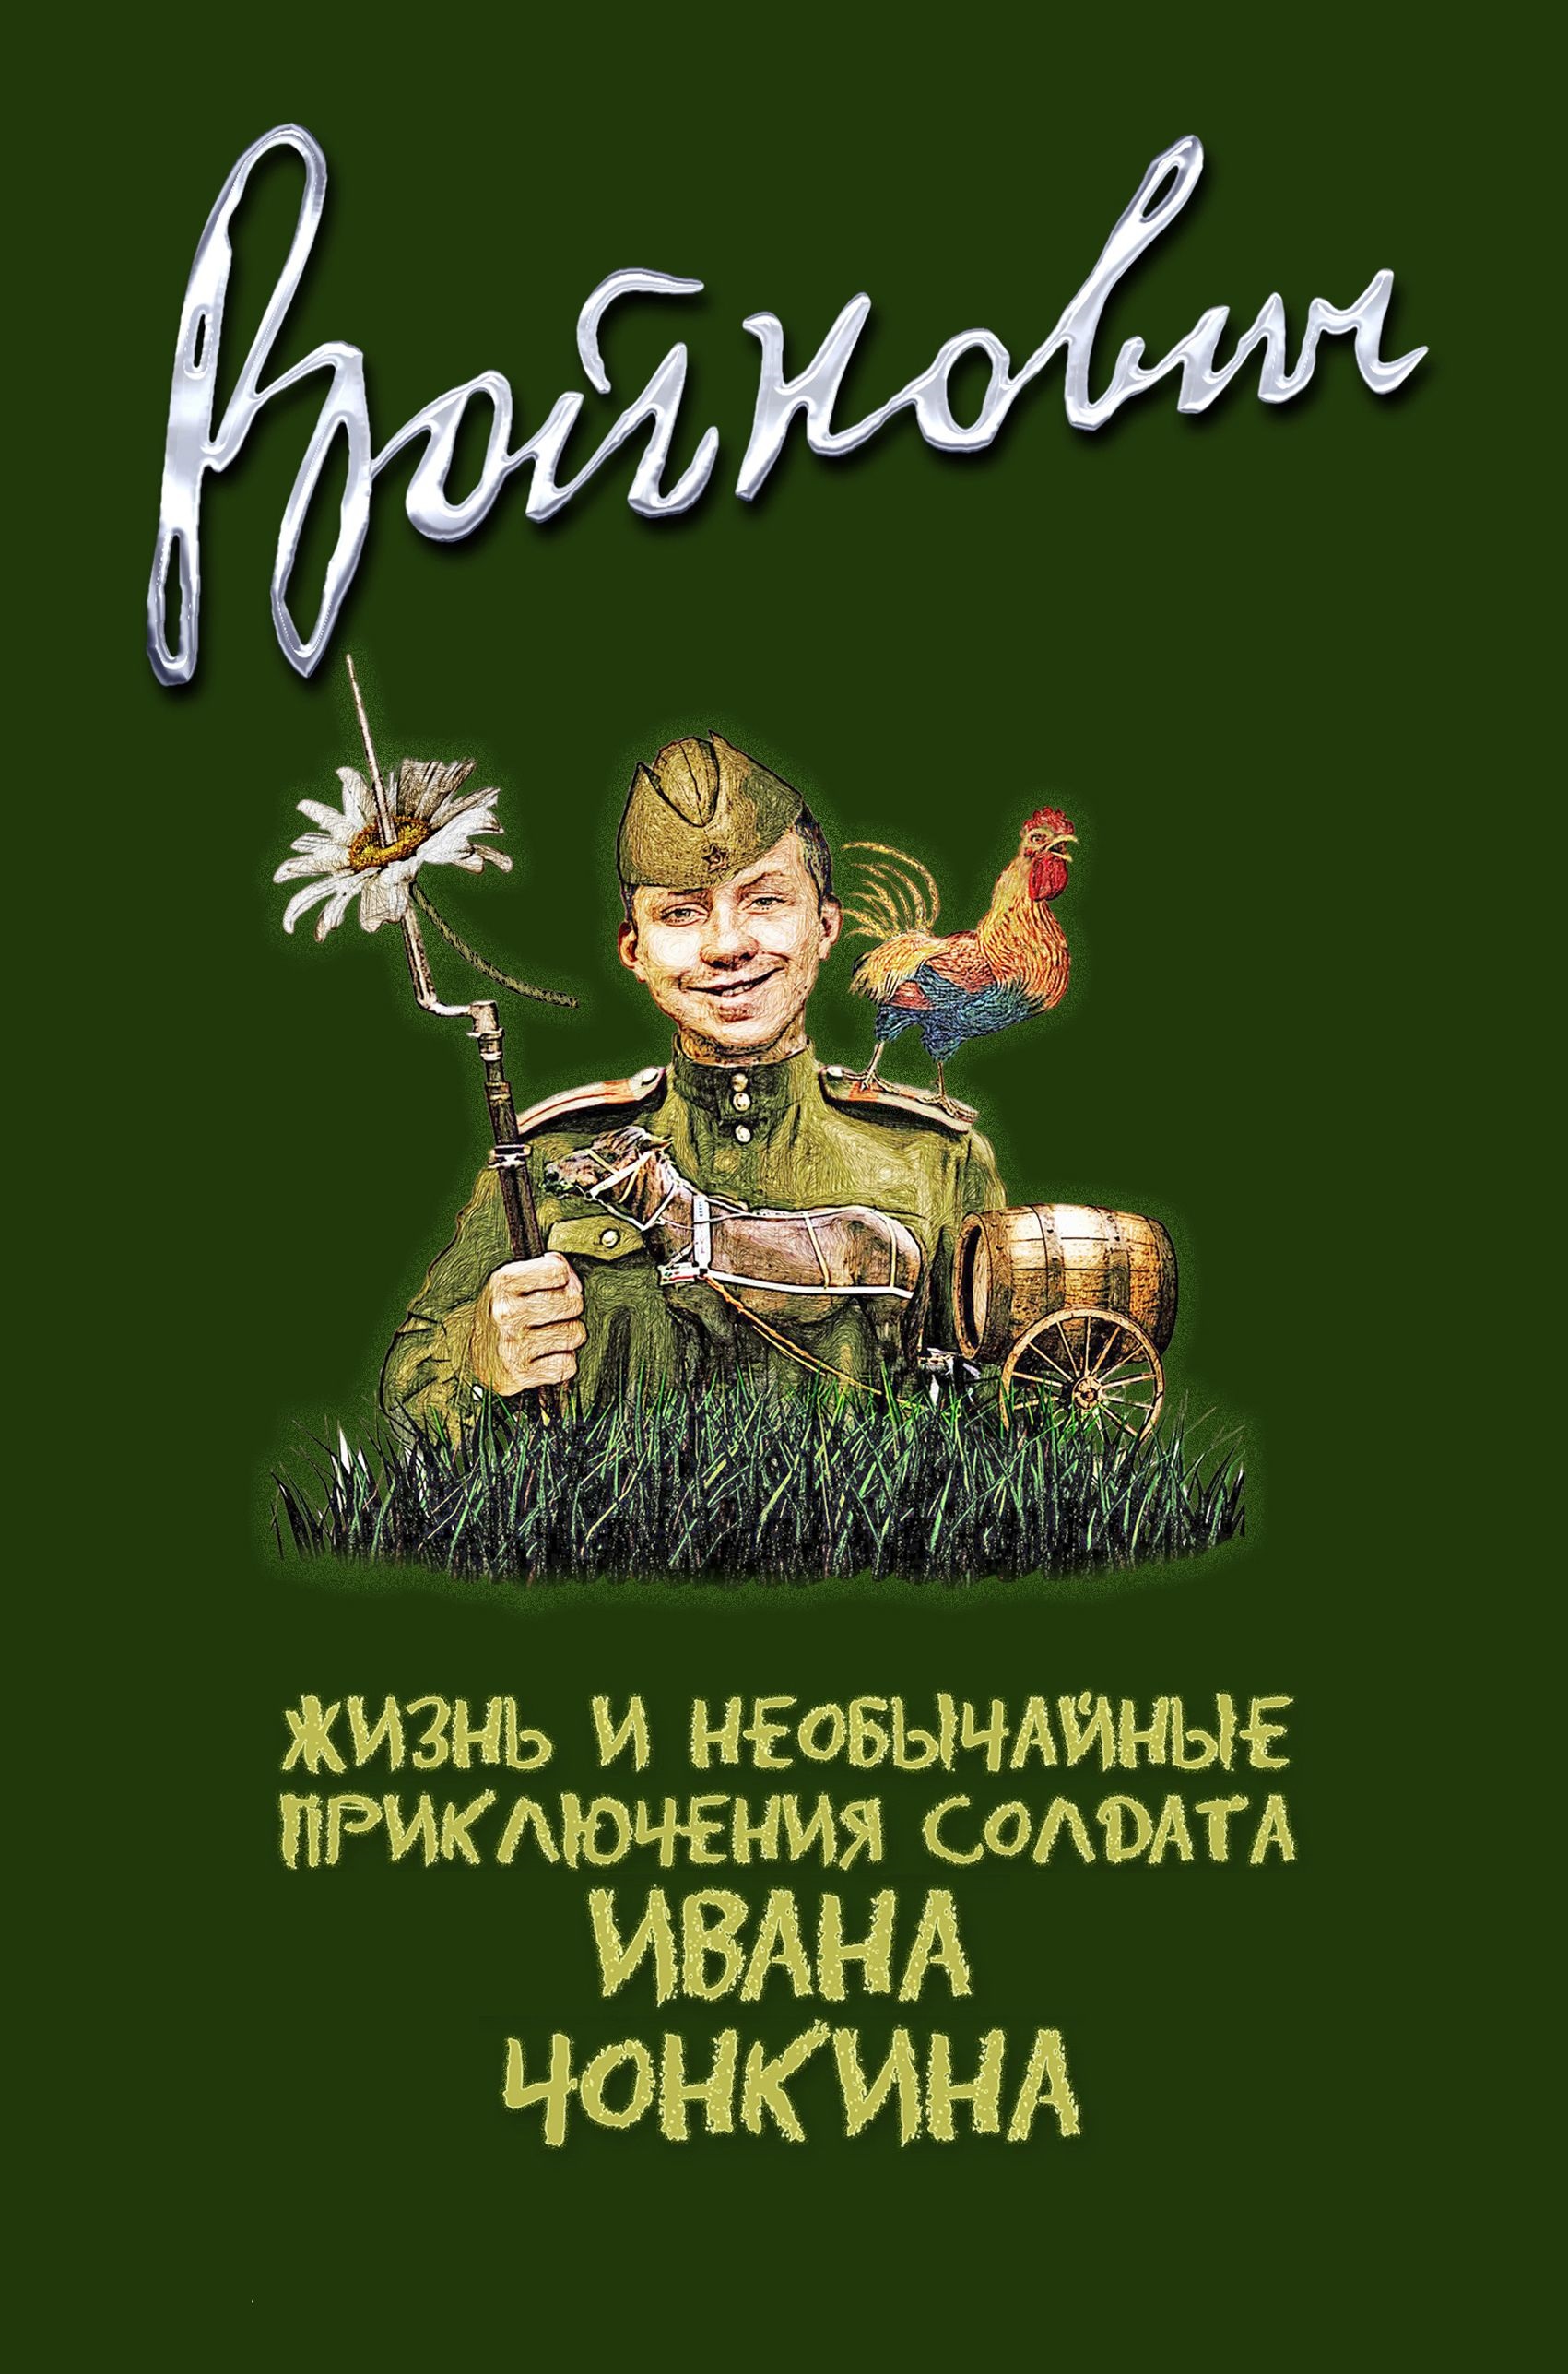 Жизнь и необычайные приключения солдата Ивана Чонкина - скачать аудиокнигу онлайн бесплатно